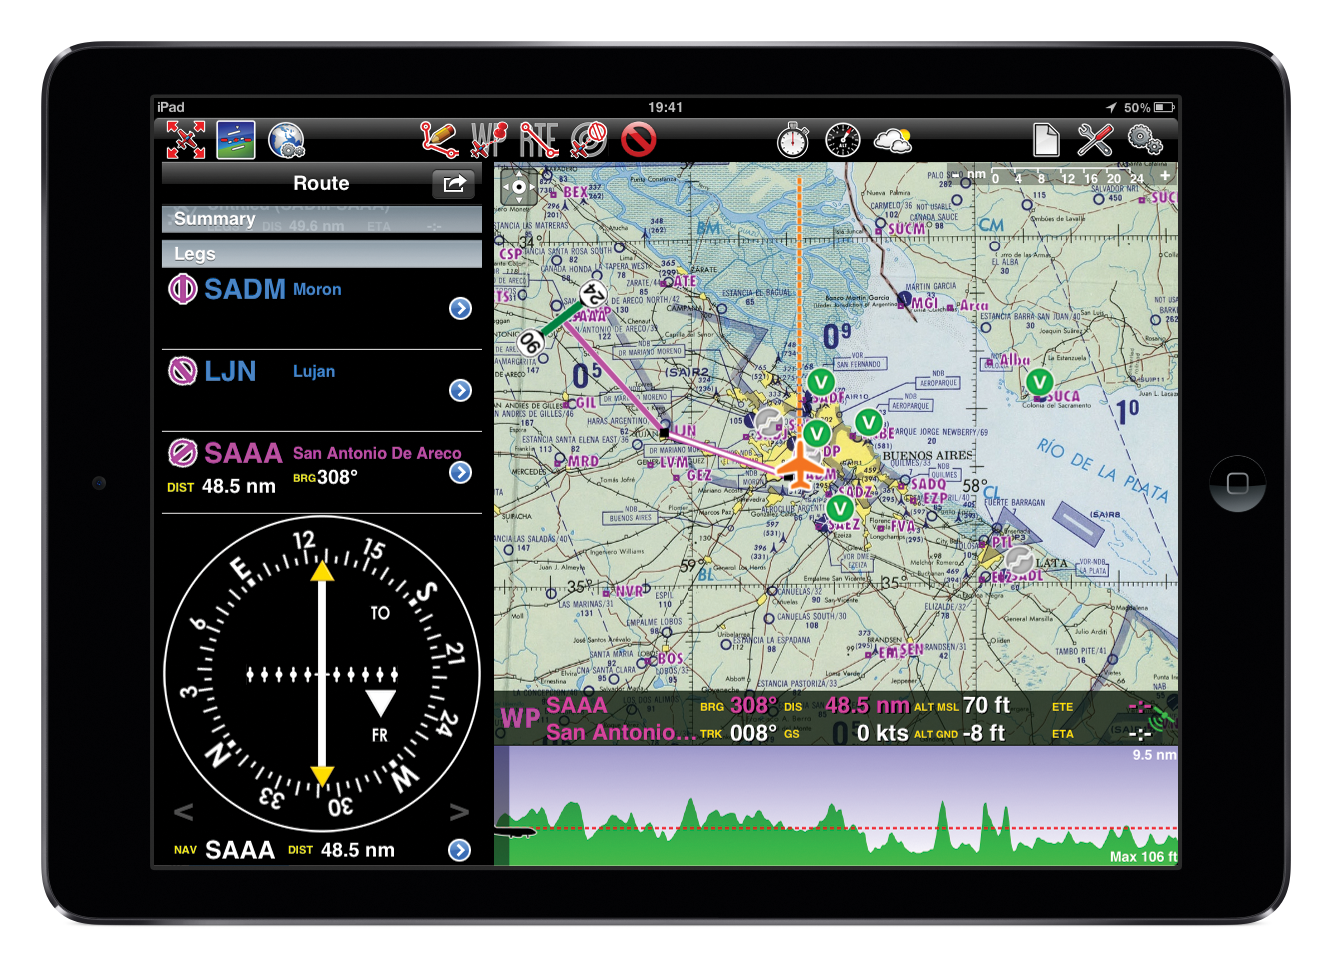 Системы навигации gps. Аэронавигационная система Гармин. Спутниковая навигация авто. Навигационные приборы самолетов. Навигационные карты для авиации.